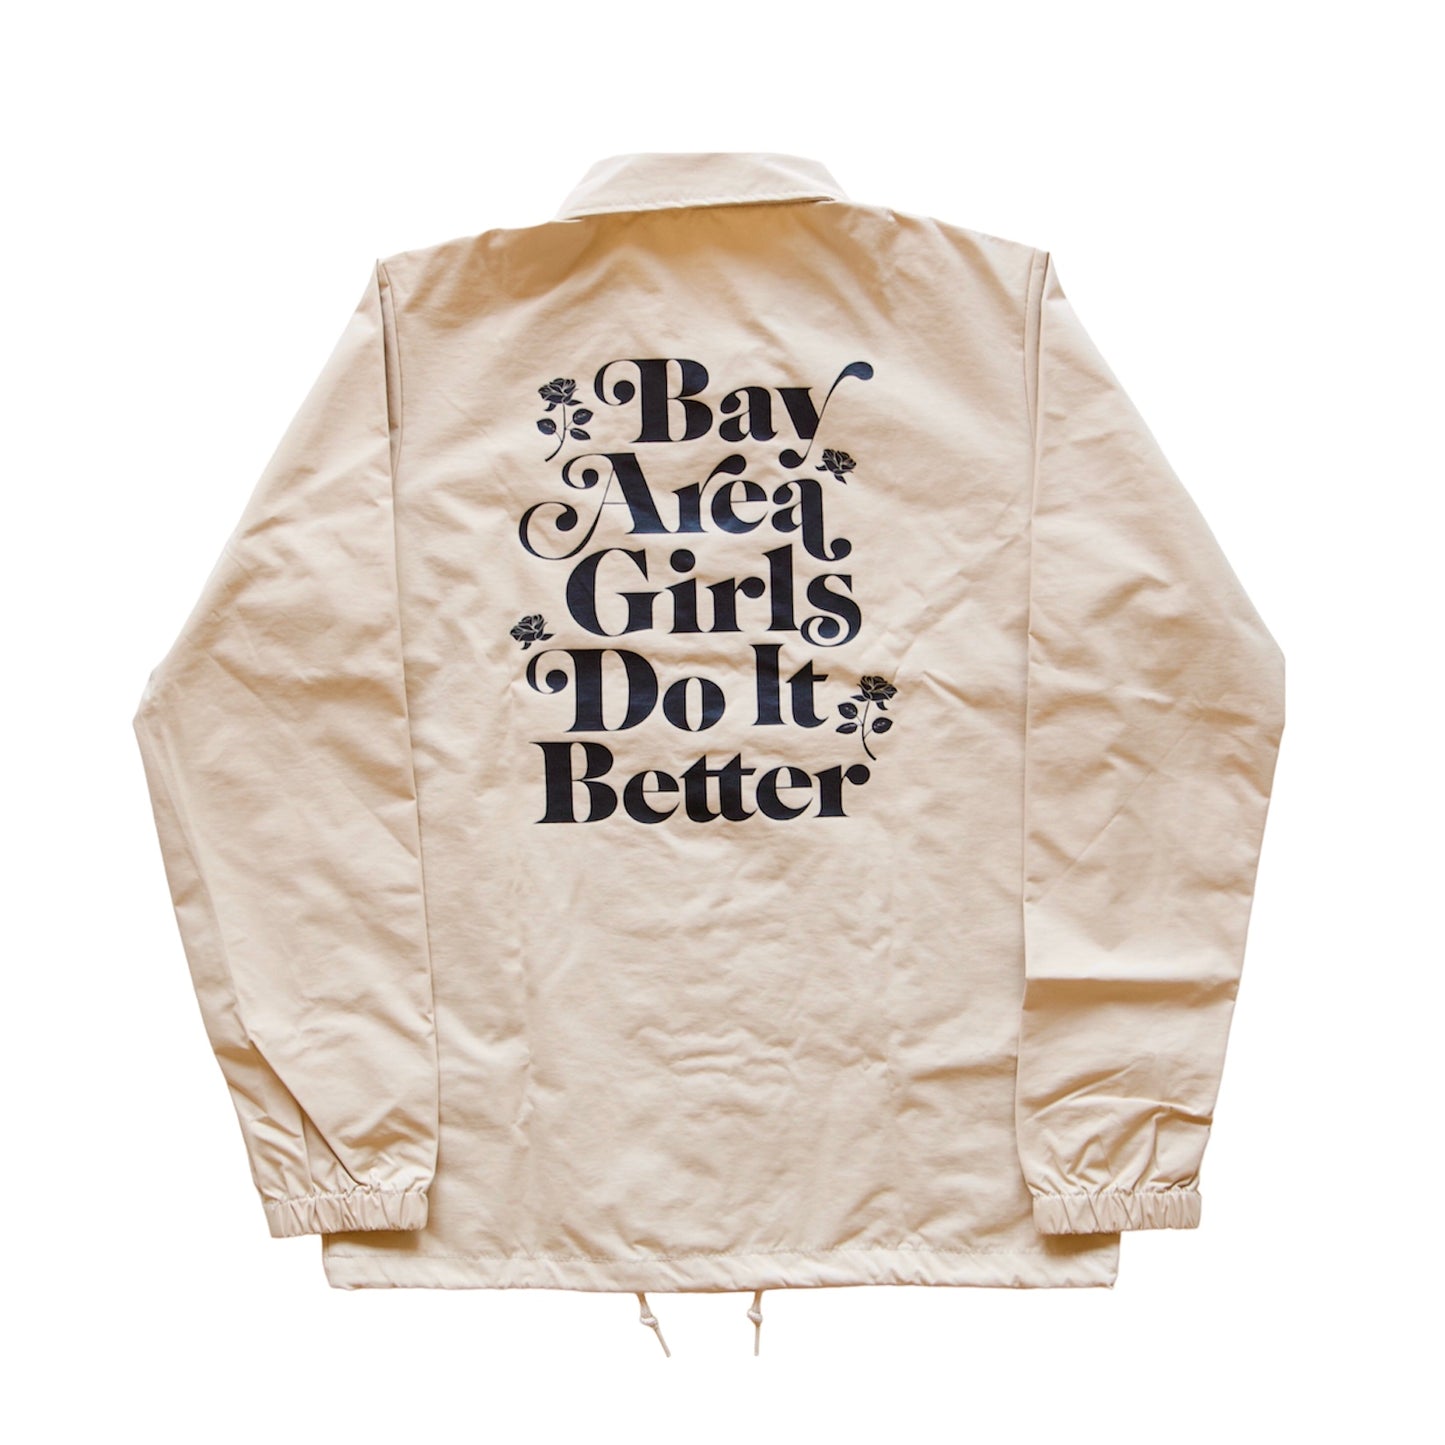 Khaki “Bay Area Girls Do It Better” Windbreaker Jacket